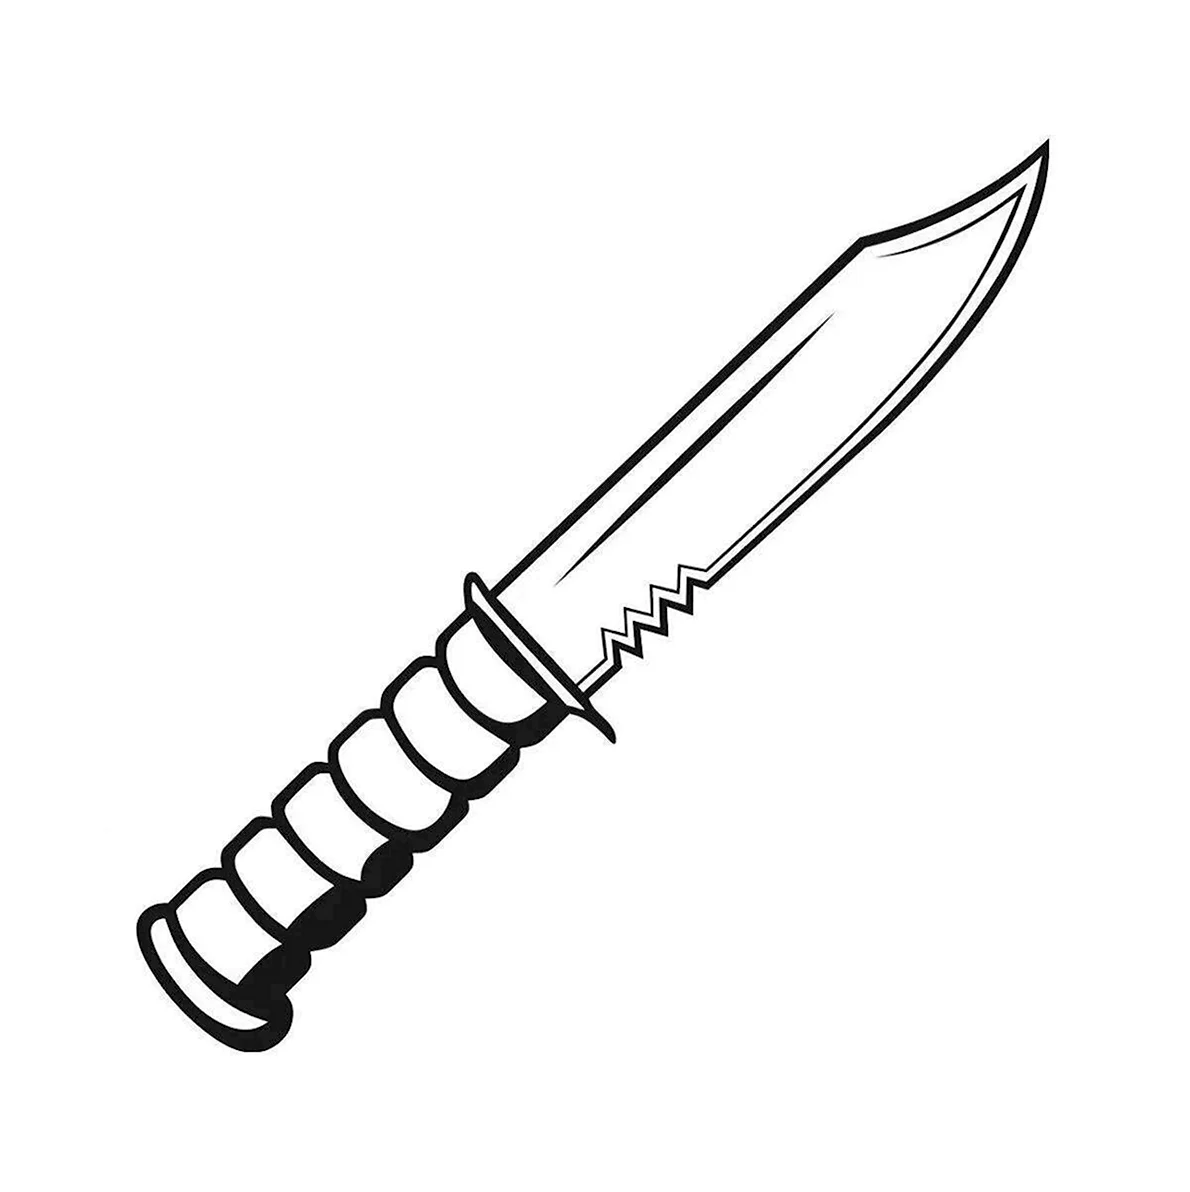 Легкие ножи standoff 2. М9 байонет черно белый. Раскраски ножи из стандофф 2 м9. Нож м9 байонет раскраски. Раскраски стандофф 2 ножи м9 байонет.